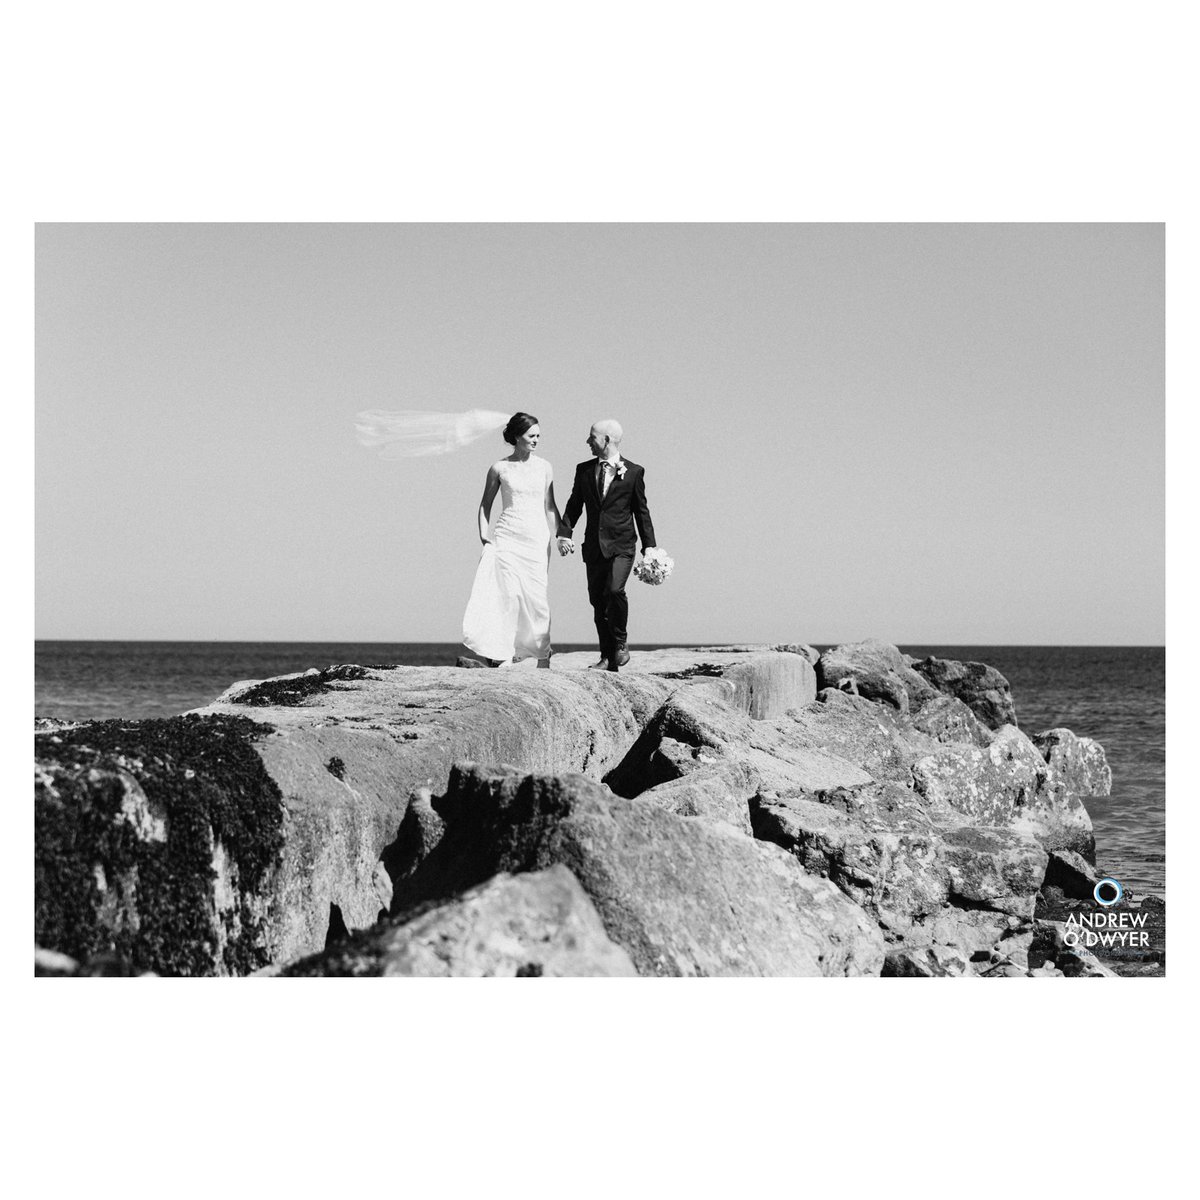 Mary + Shaun @Garryvoehotel .
.
#garryvoehotel #garryvoeweddings #corkwedding #irishwedding #corkphotographer #bw #bwwedding #blackandwhitewedding #beachwedding #coupleshoot #weddingday